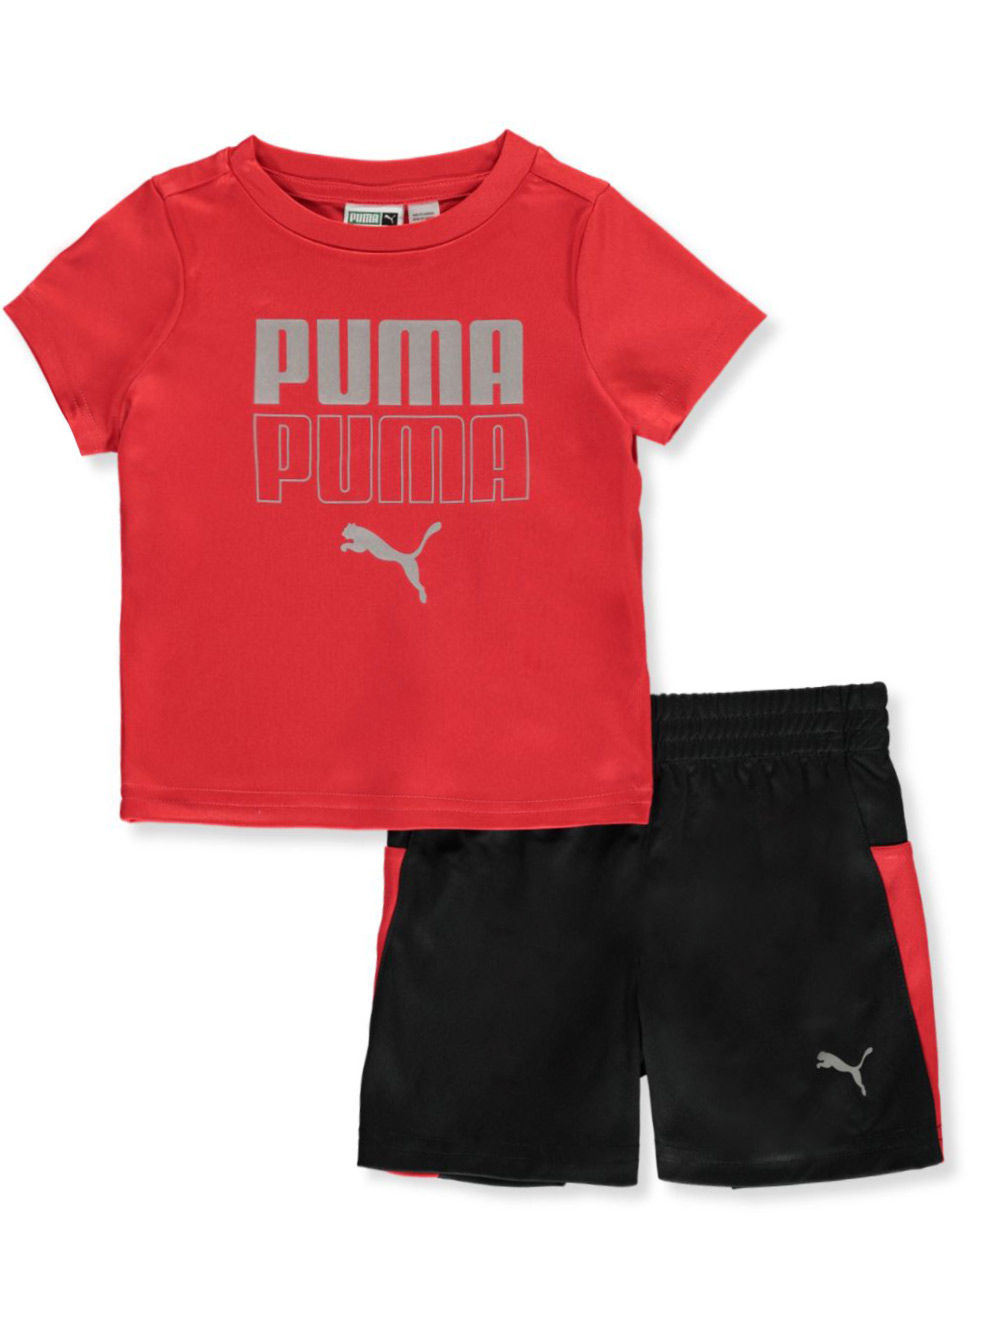 puma boys outfit